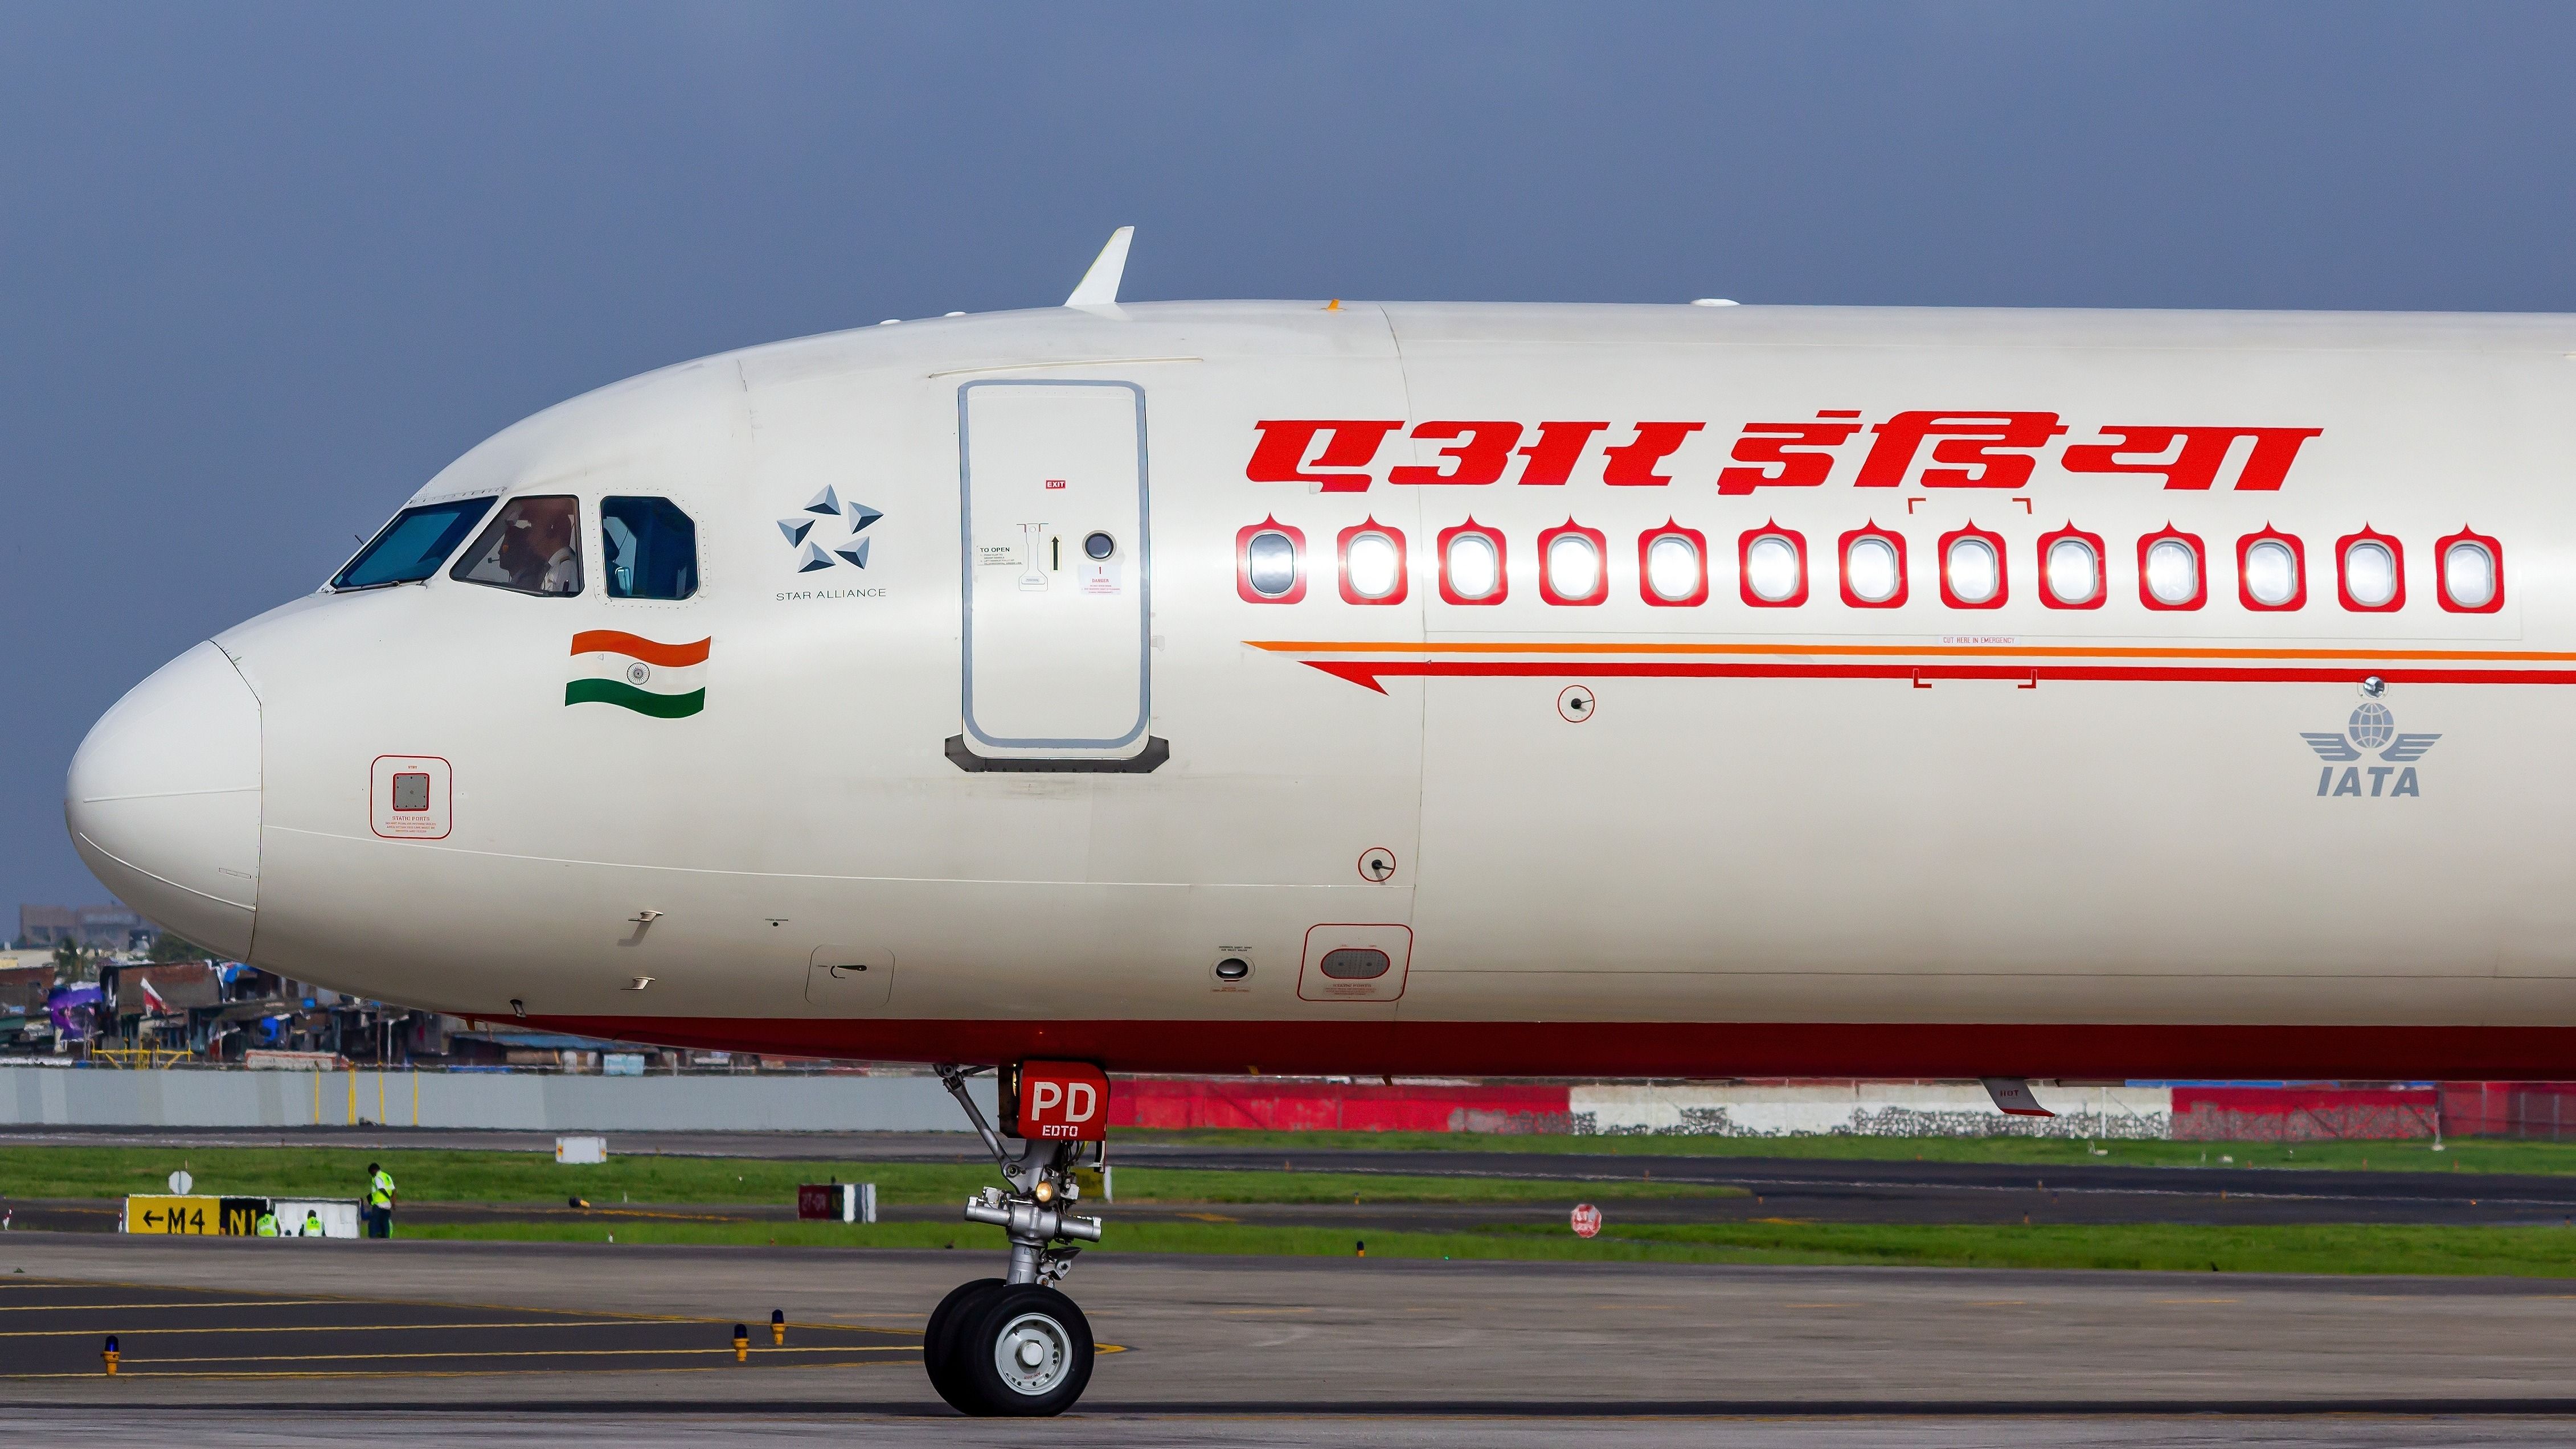 An Air India aircraft at an airport